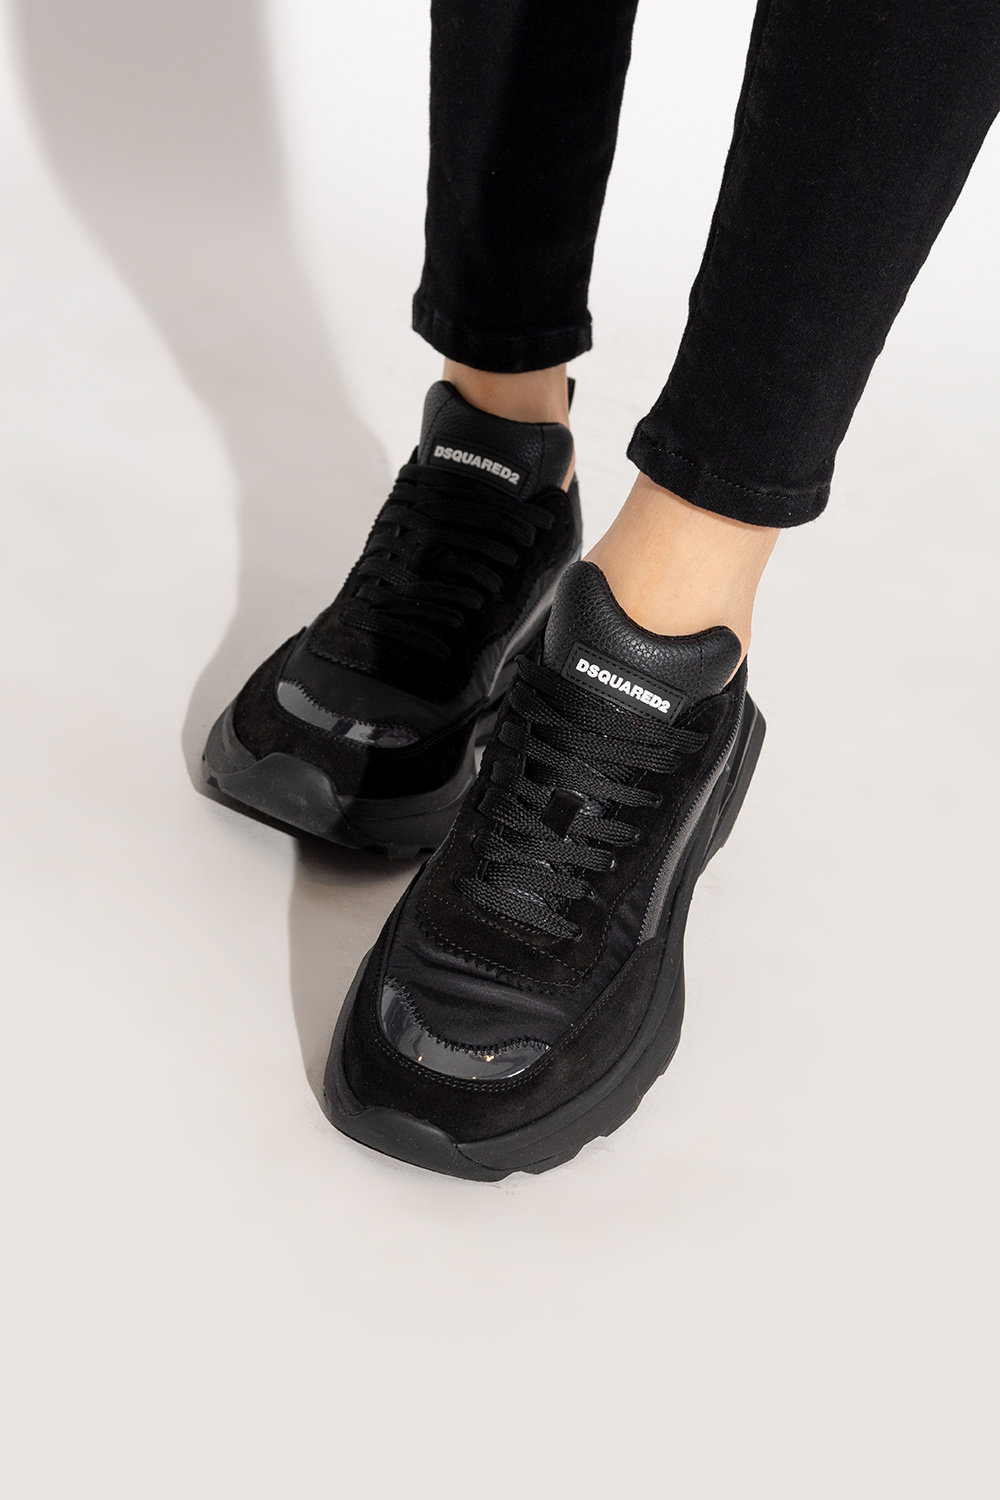 Dsquared2 ‘Slash’ sneakers | Women's Shoes | Vitkac